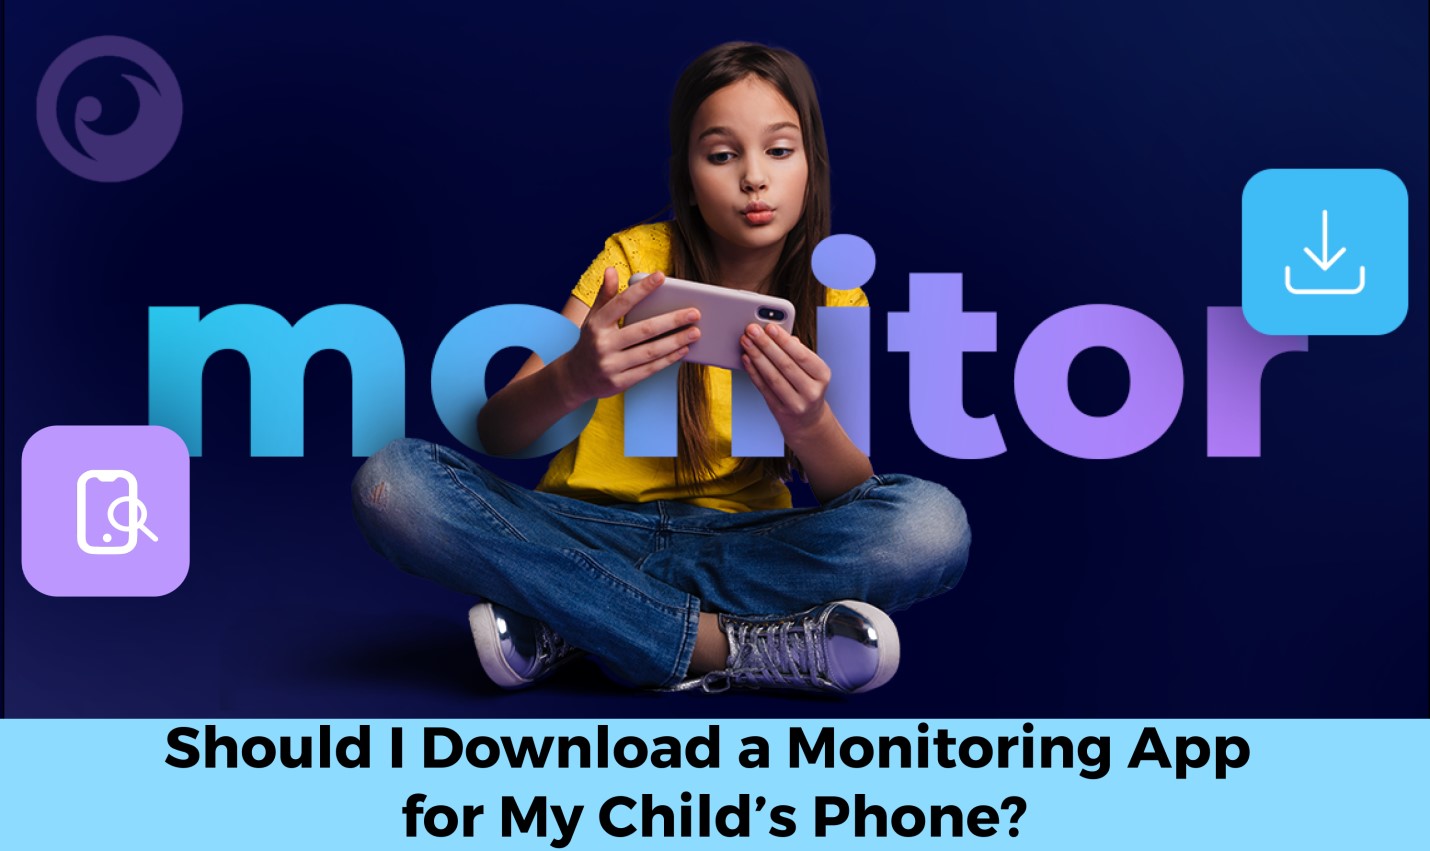 ¿Debo descargar una aplicación de monitoreo para el teléfono de mi hijo? - imagen de noticias en imei.info